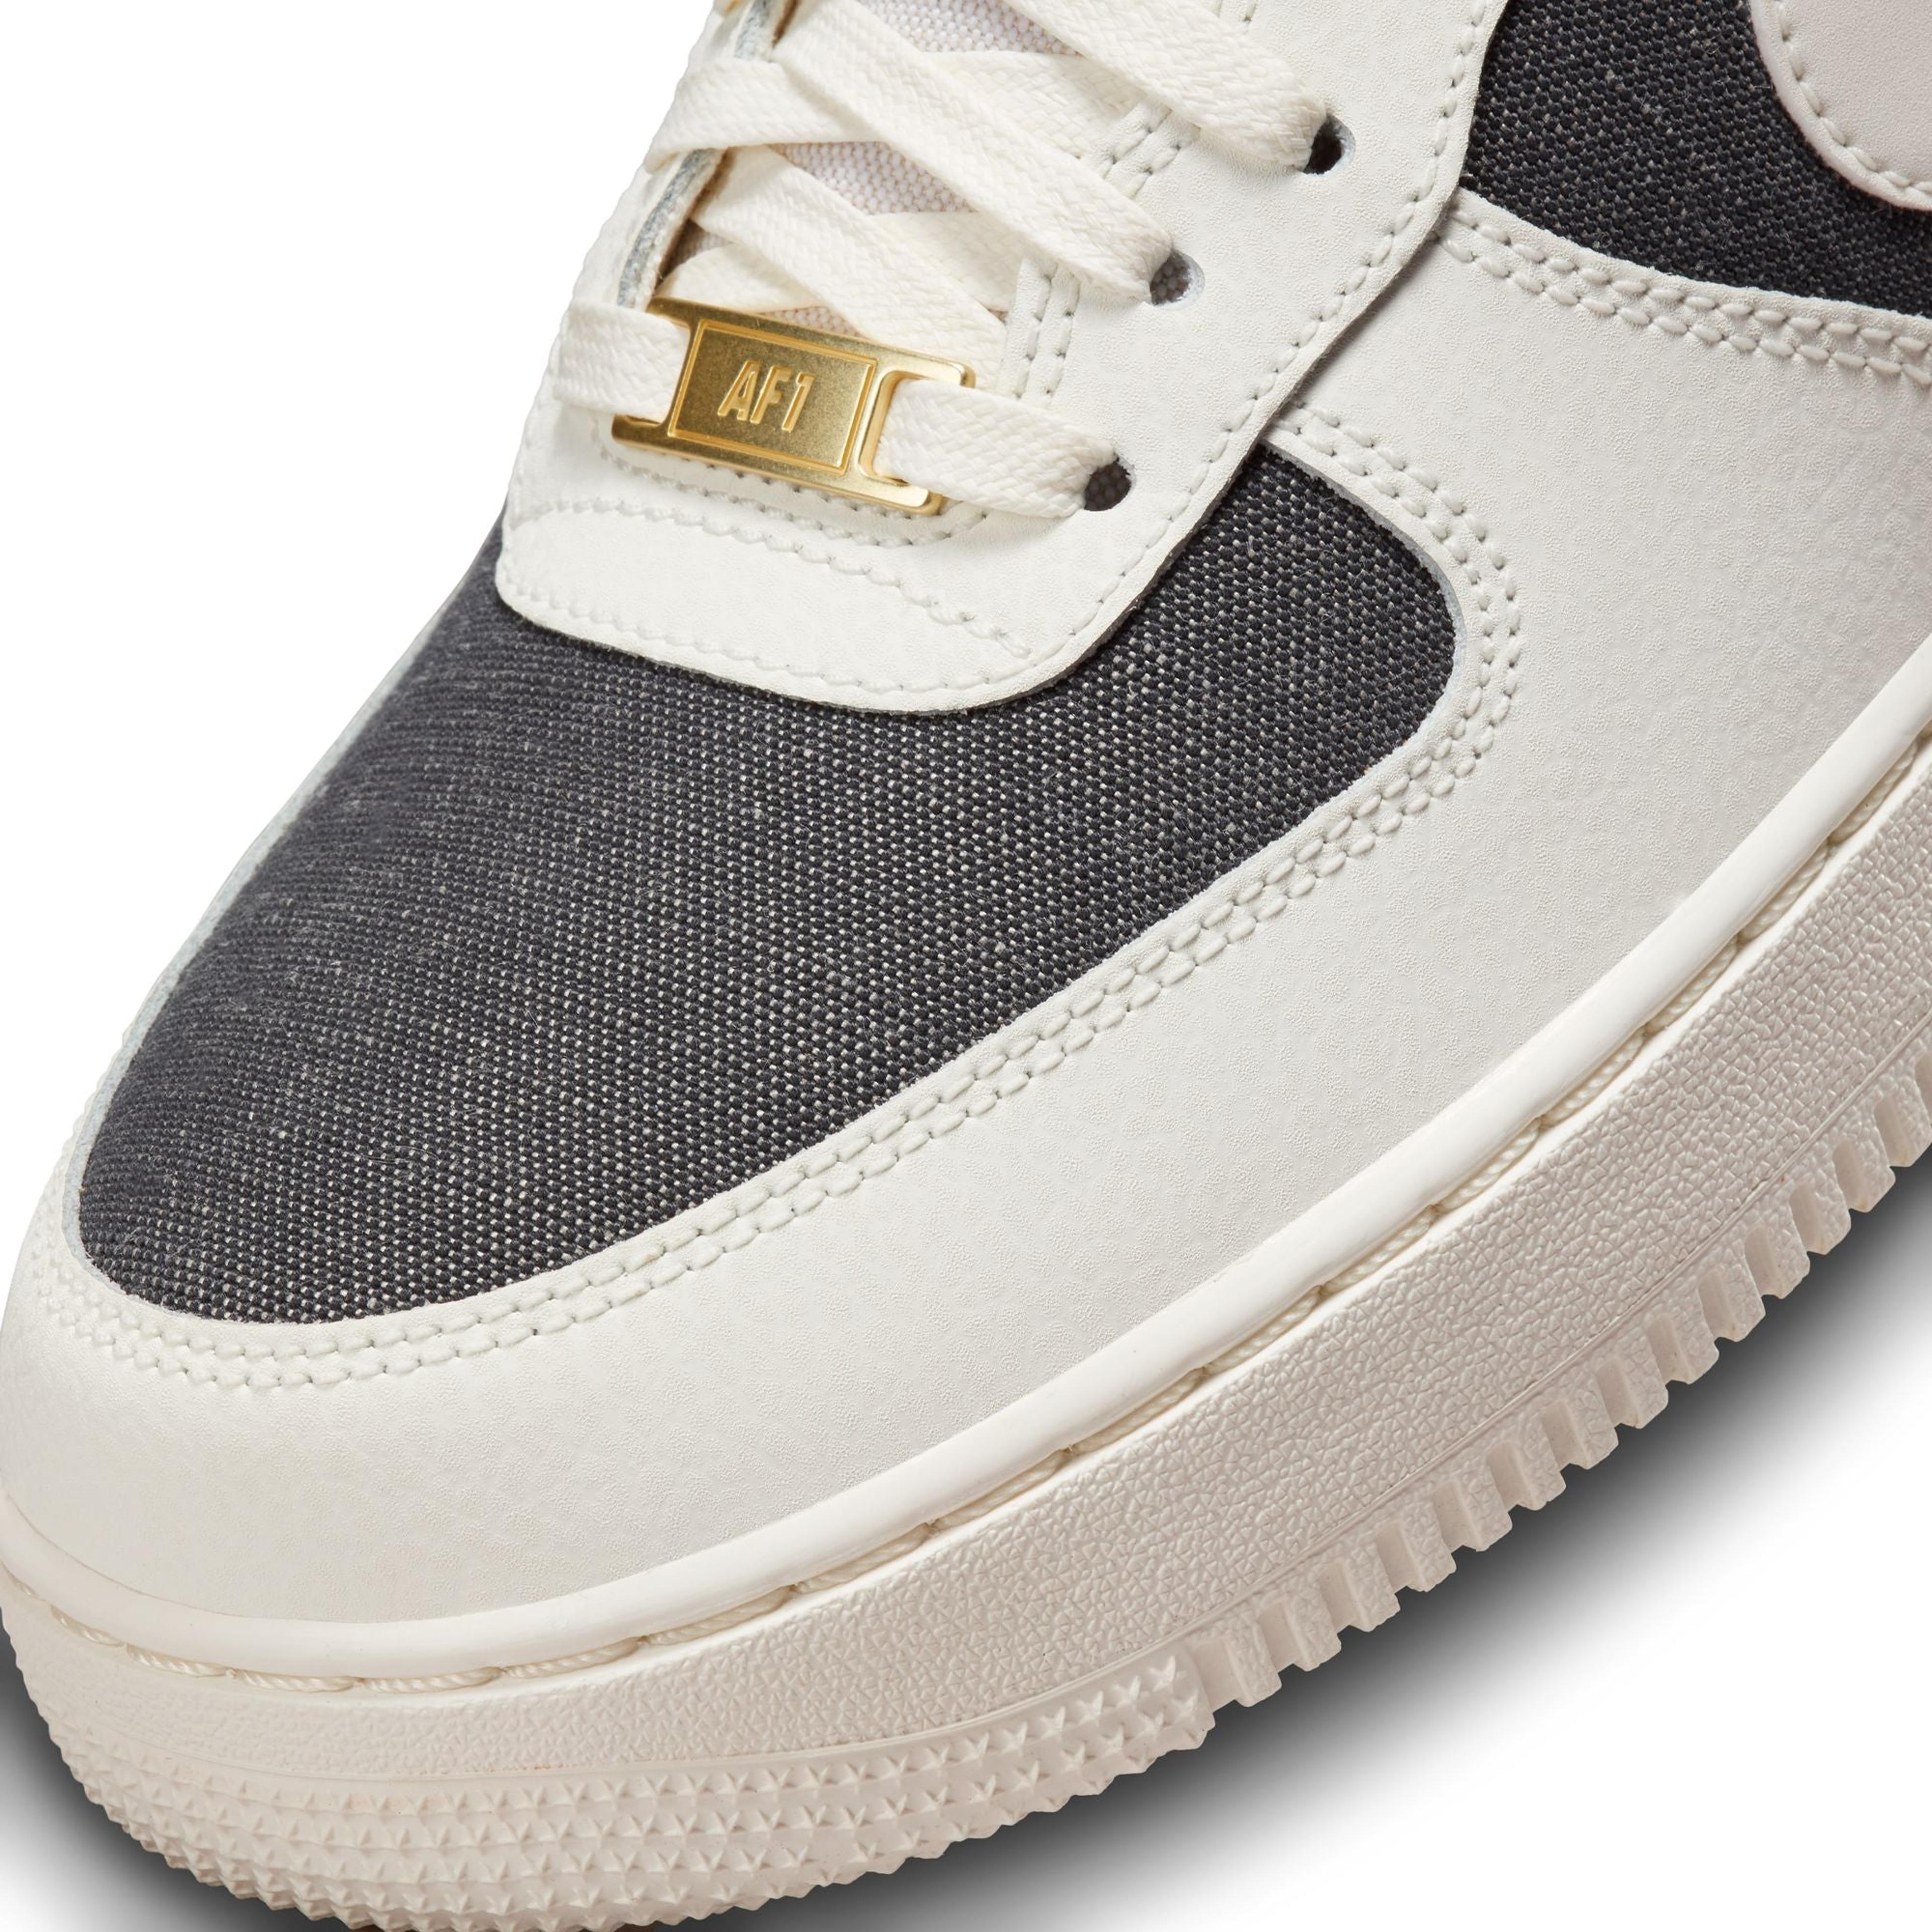 Men's Nike Air Force 1 Low '07 LV8 Black Smoke Grey -Size 13 -CZ0337 001  -NEW